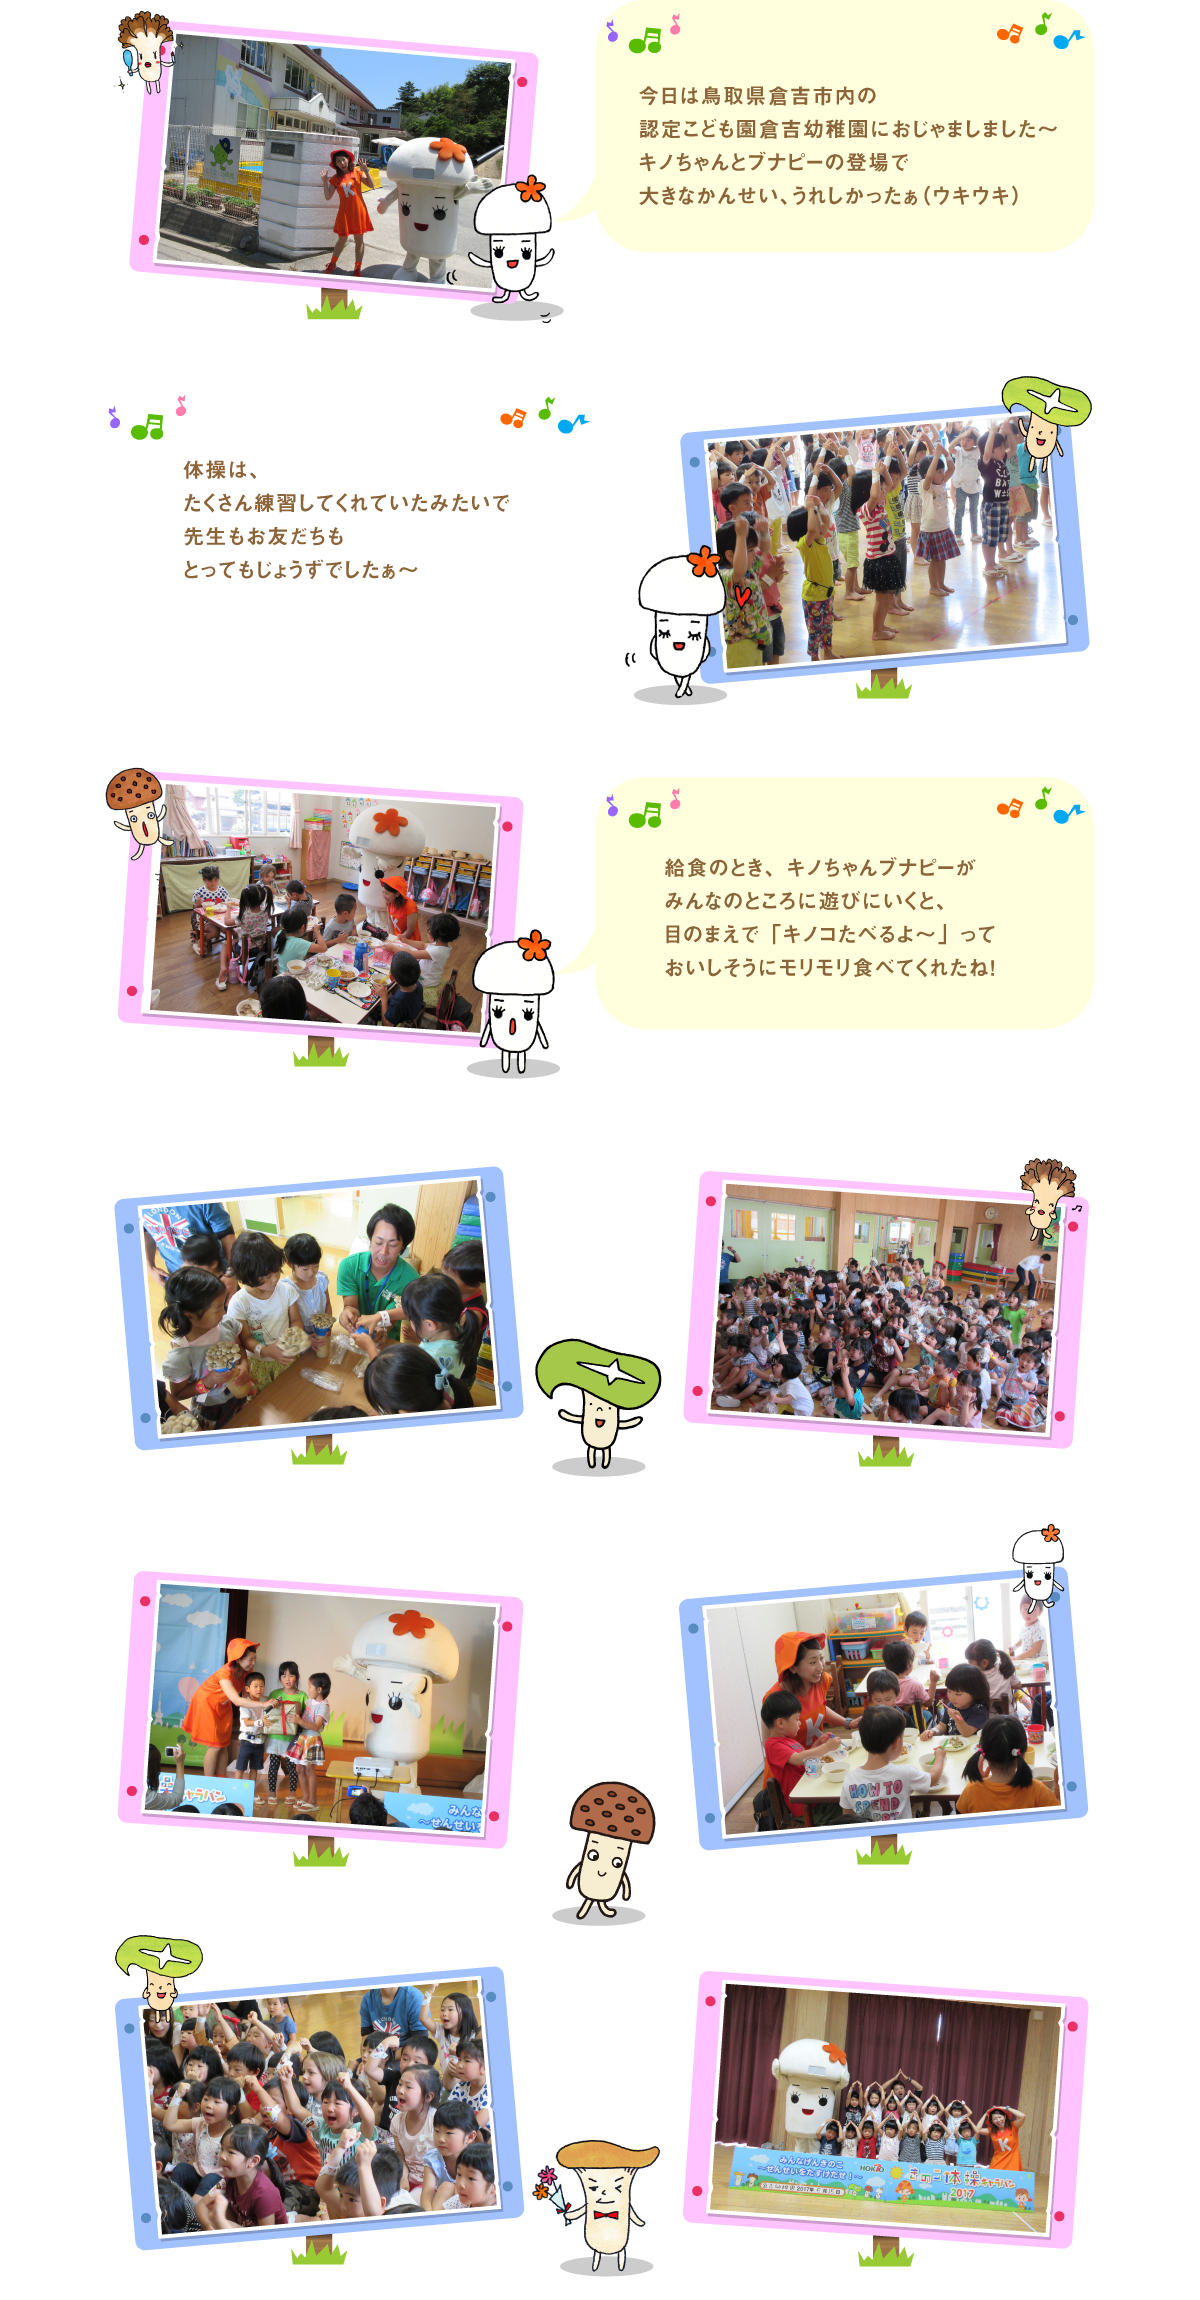 
今日は鳥取県倉吉市内の認定こども園倉吉幼稚園に
おじゃましました～ キノちゃんとブナピーの登場で
大きなかんせい、うれしかったぁ（ウキウキ）

体操は、たくさん練習してくれていたみたいで
先生もお友だちもとってもじょうずでしたぁ～

給食のとき、キノちゃんブナピーがみんなのところに
遊びにいくと、目のまえで「キノコたべるよ～」って
おいしそうにモリモリ食べてくれたね！


